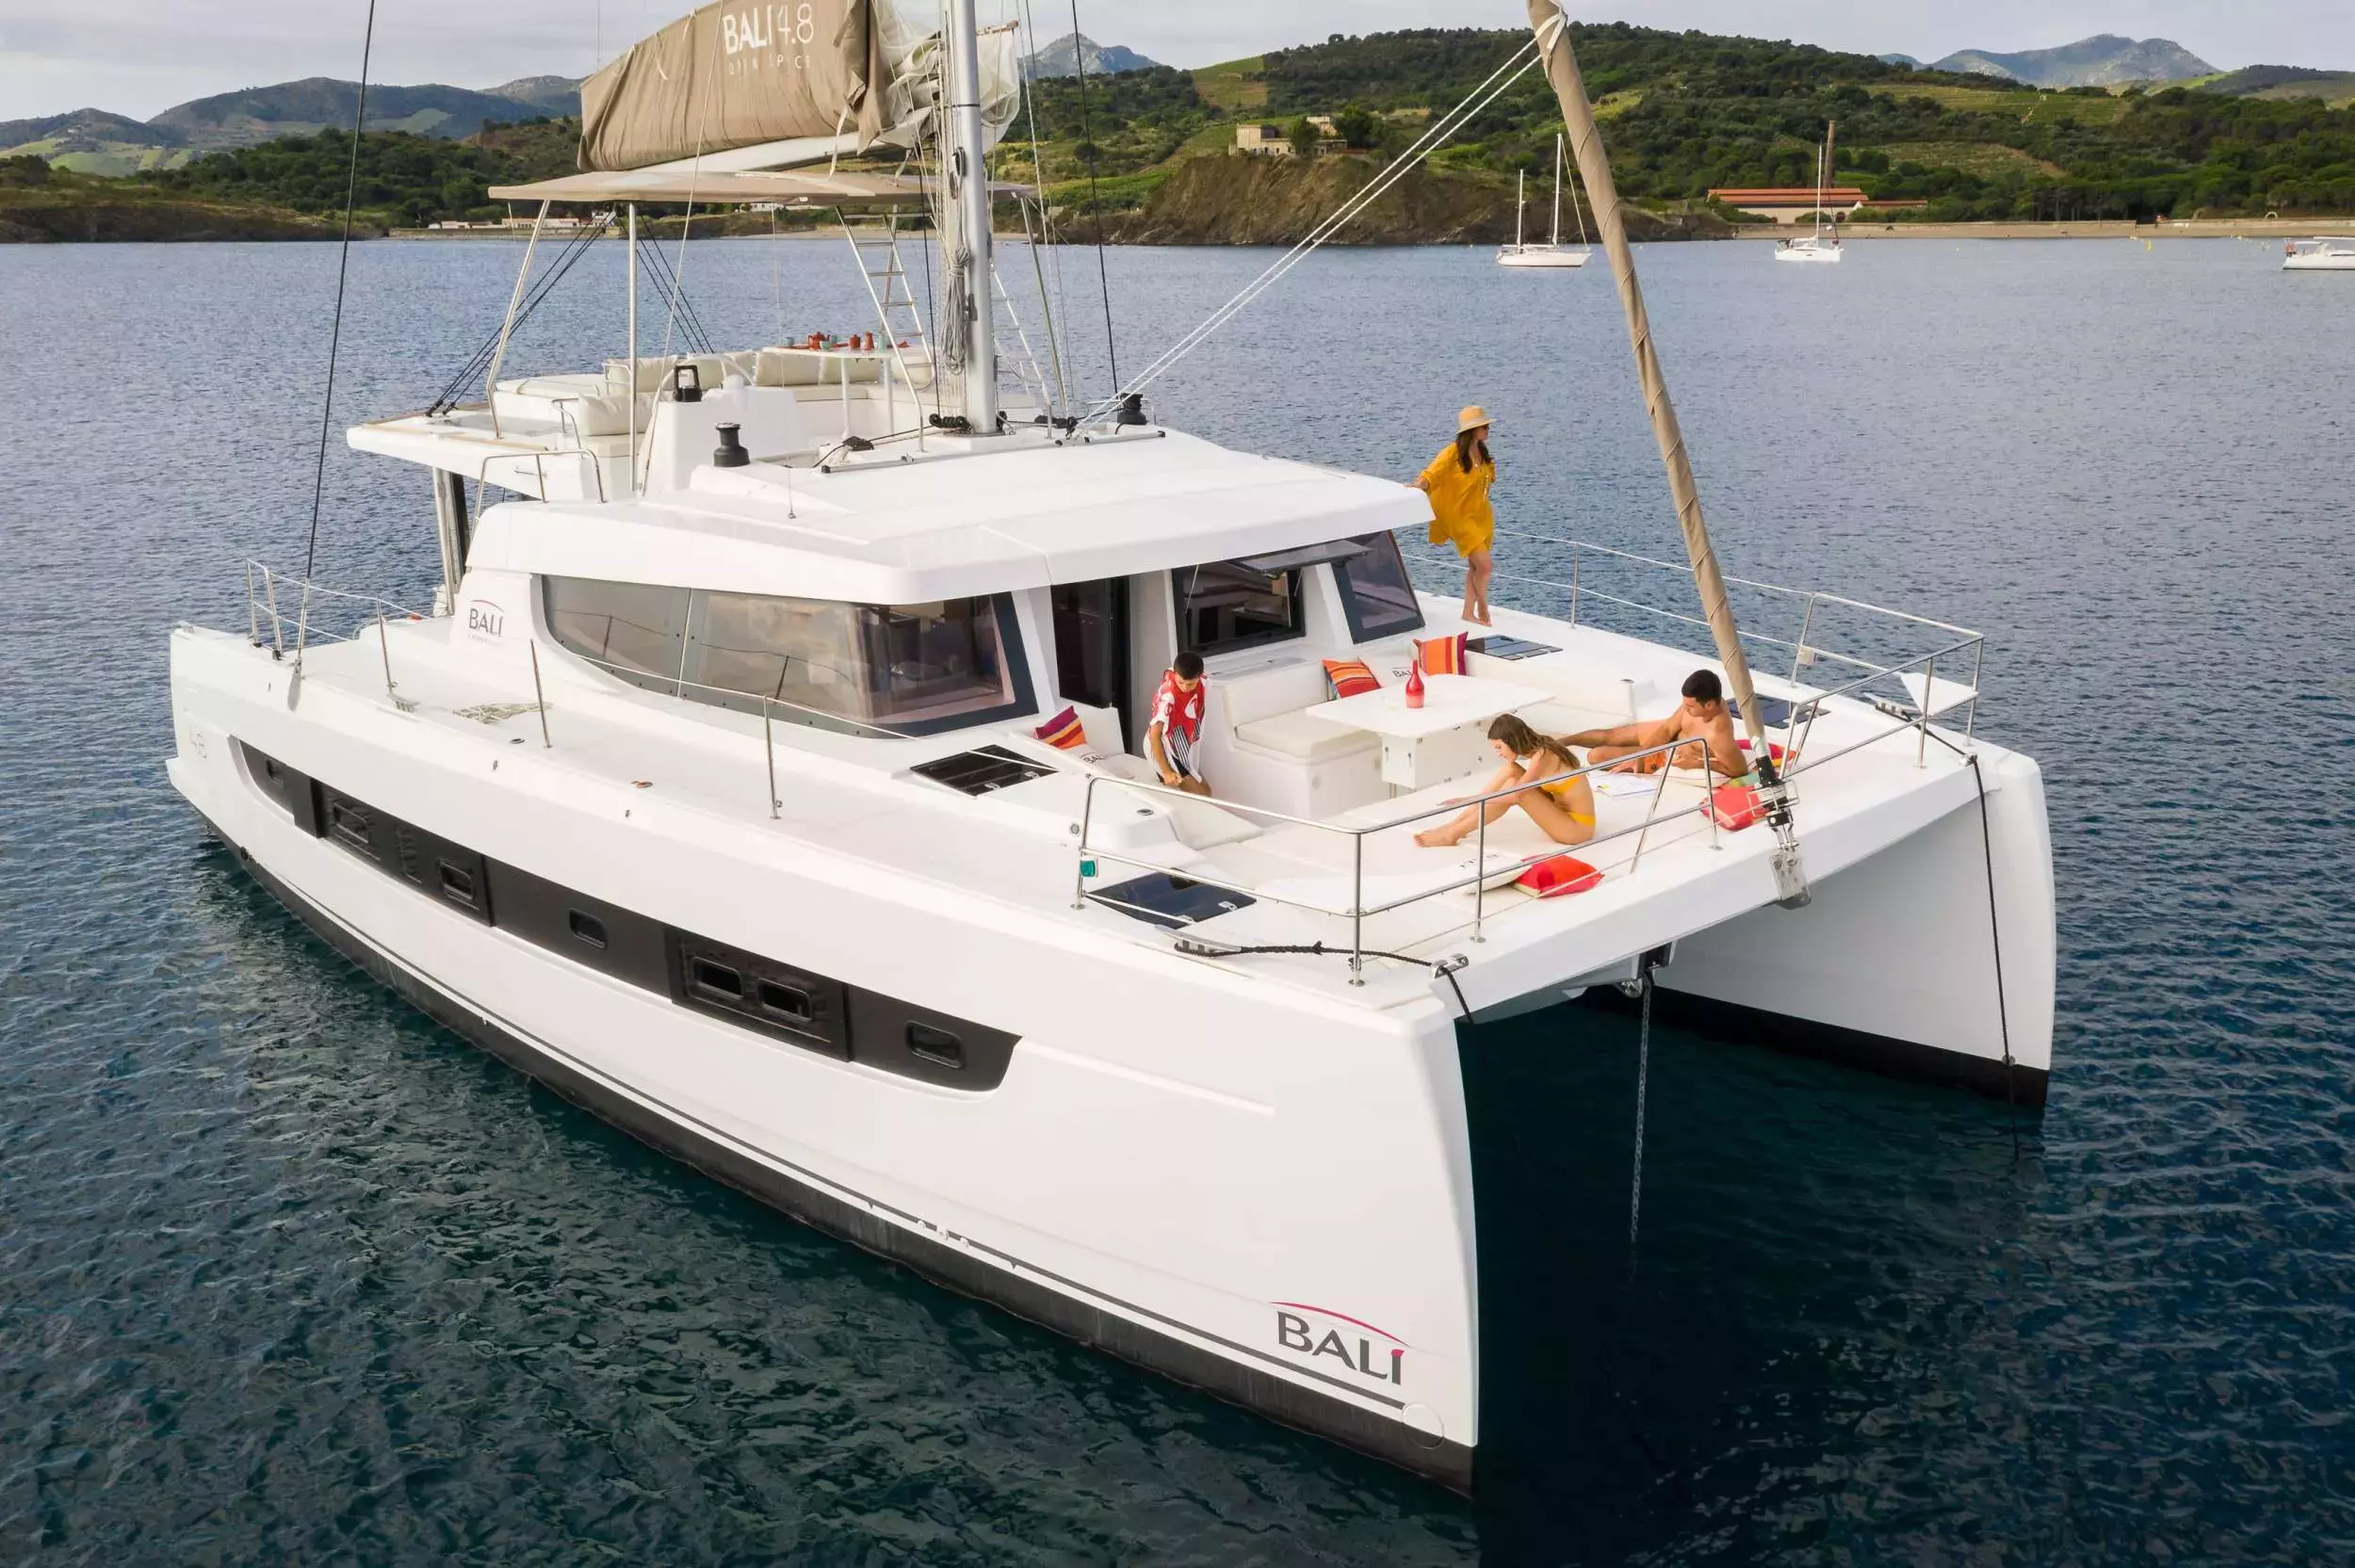 Yemaya by Bali Catamarans - Top rates for a Rental of a private Sailing Catamaran in Spain